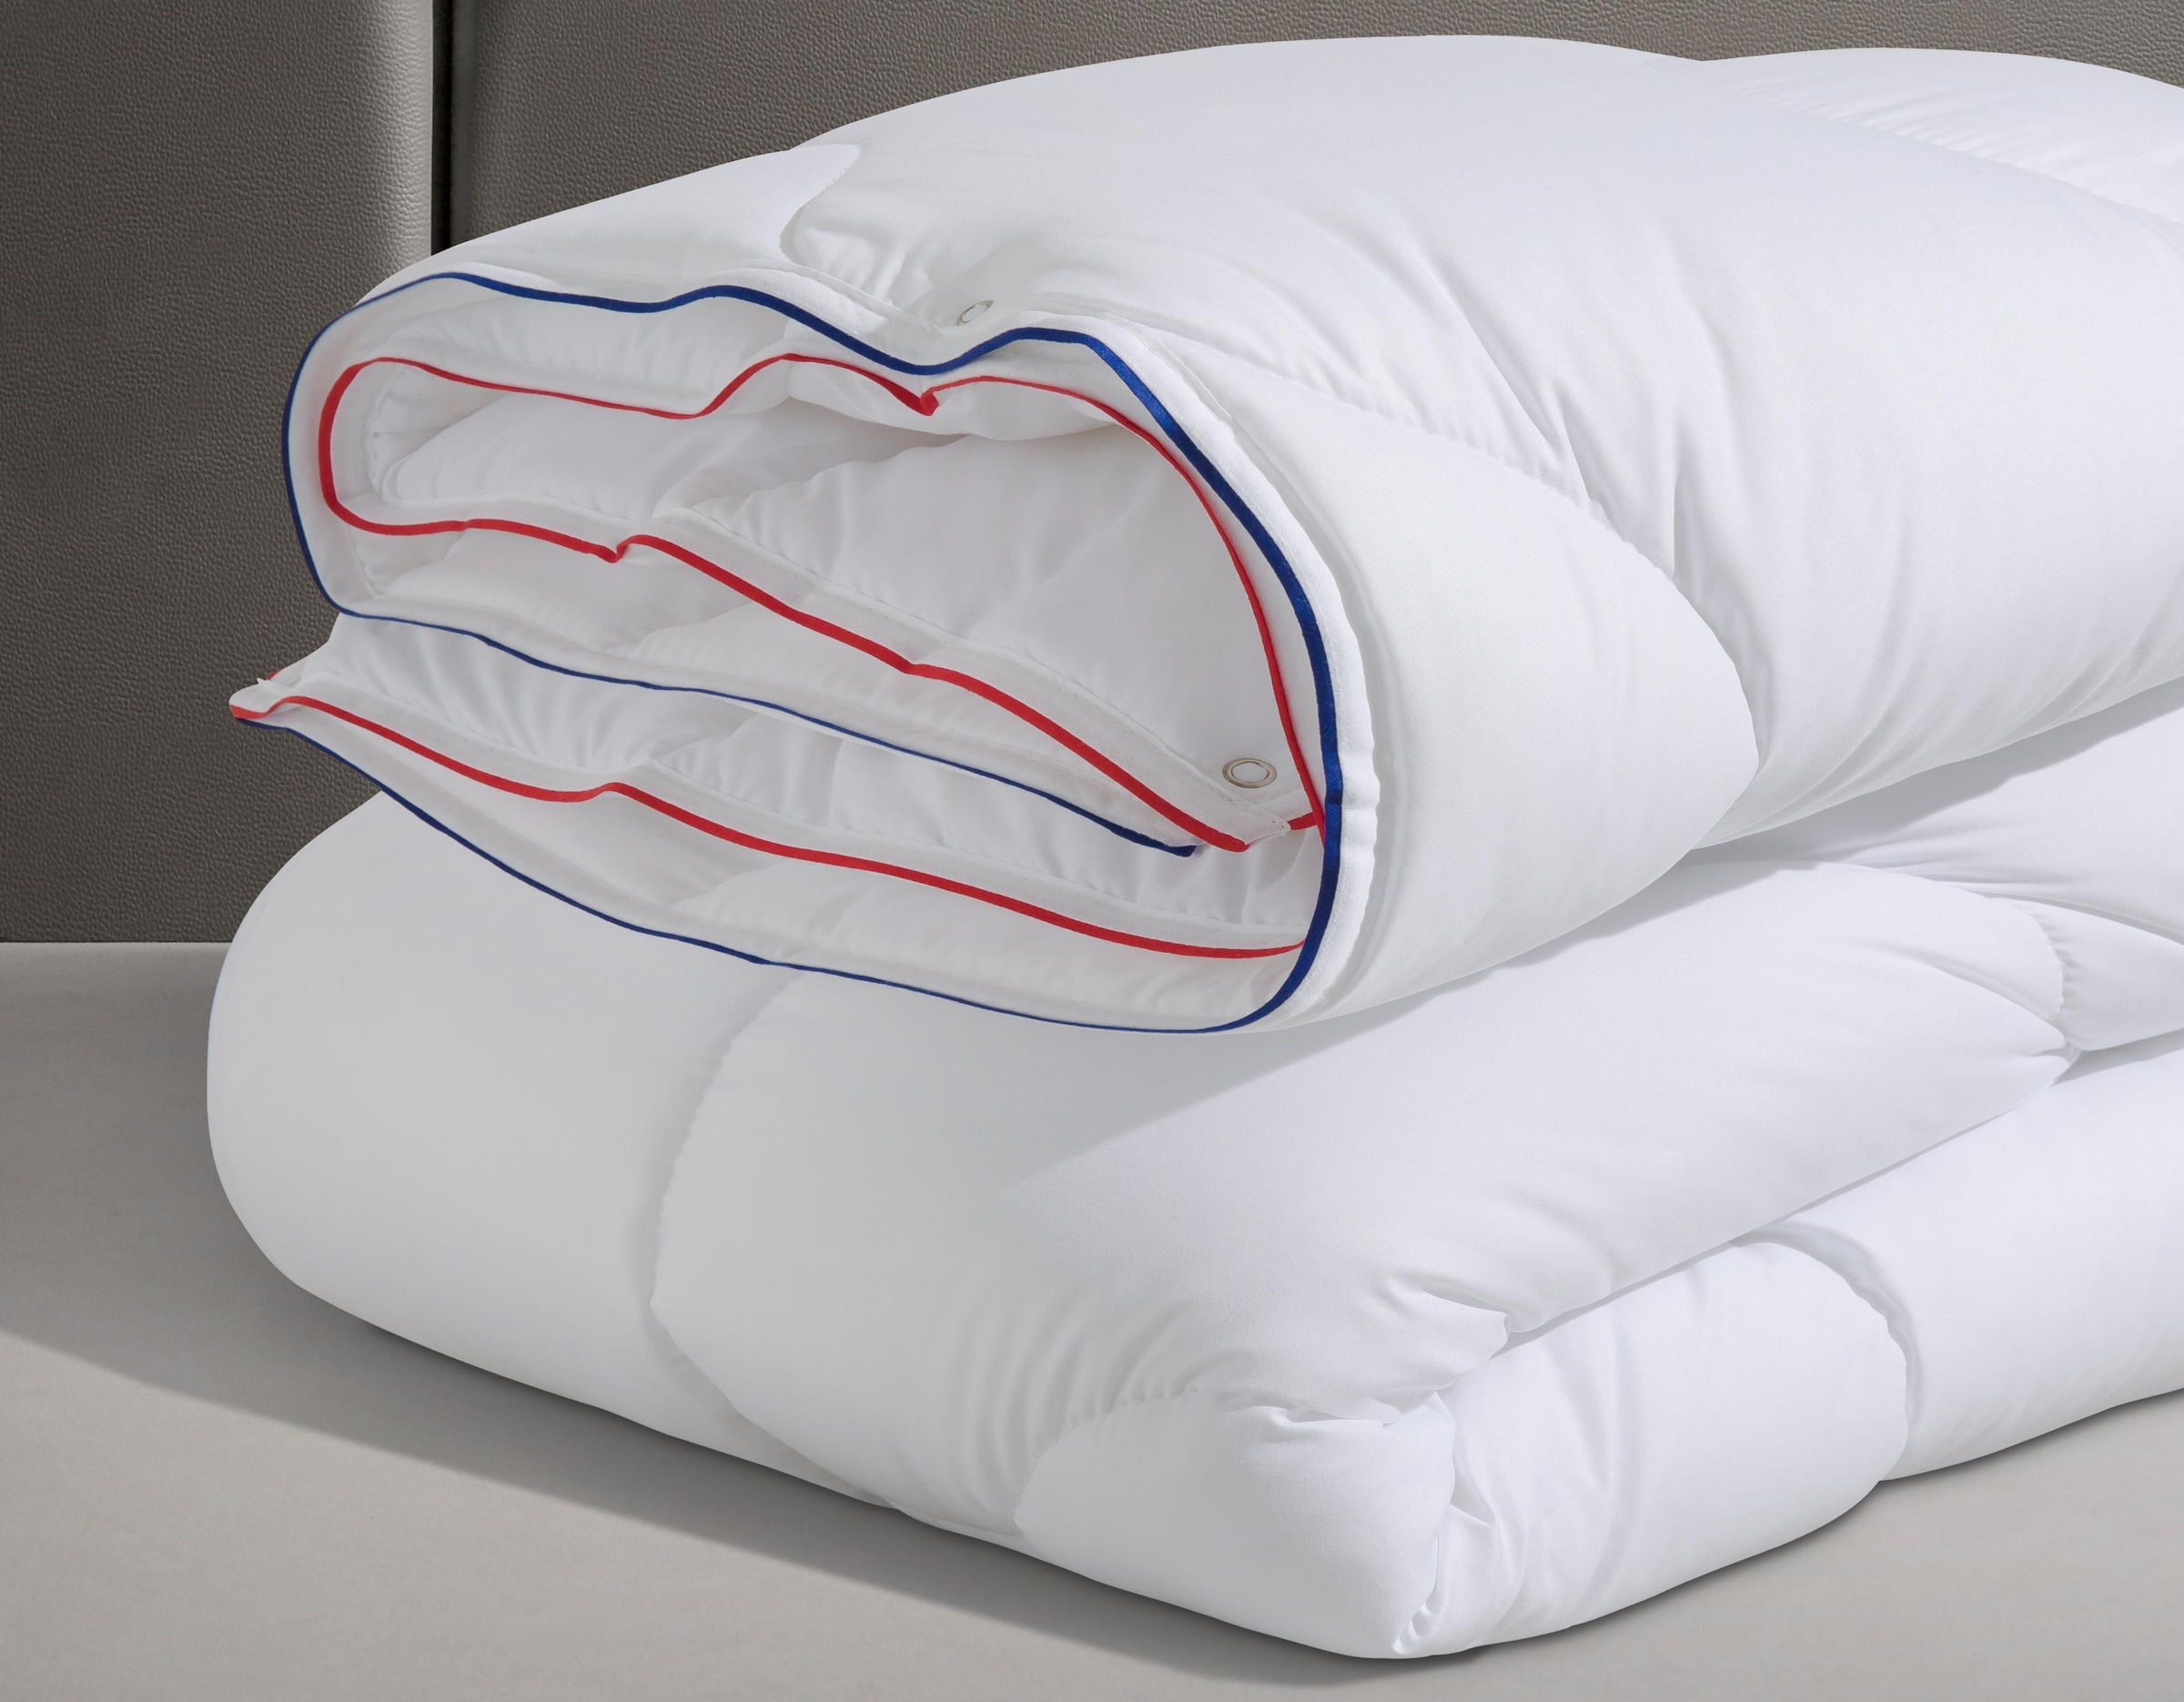 BeSports Bettdecke und 4-Jahreszeitenbettdecke einem Kissen!), besteht gut\